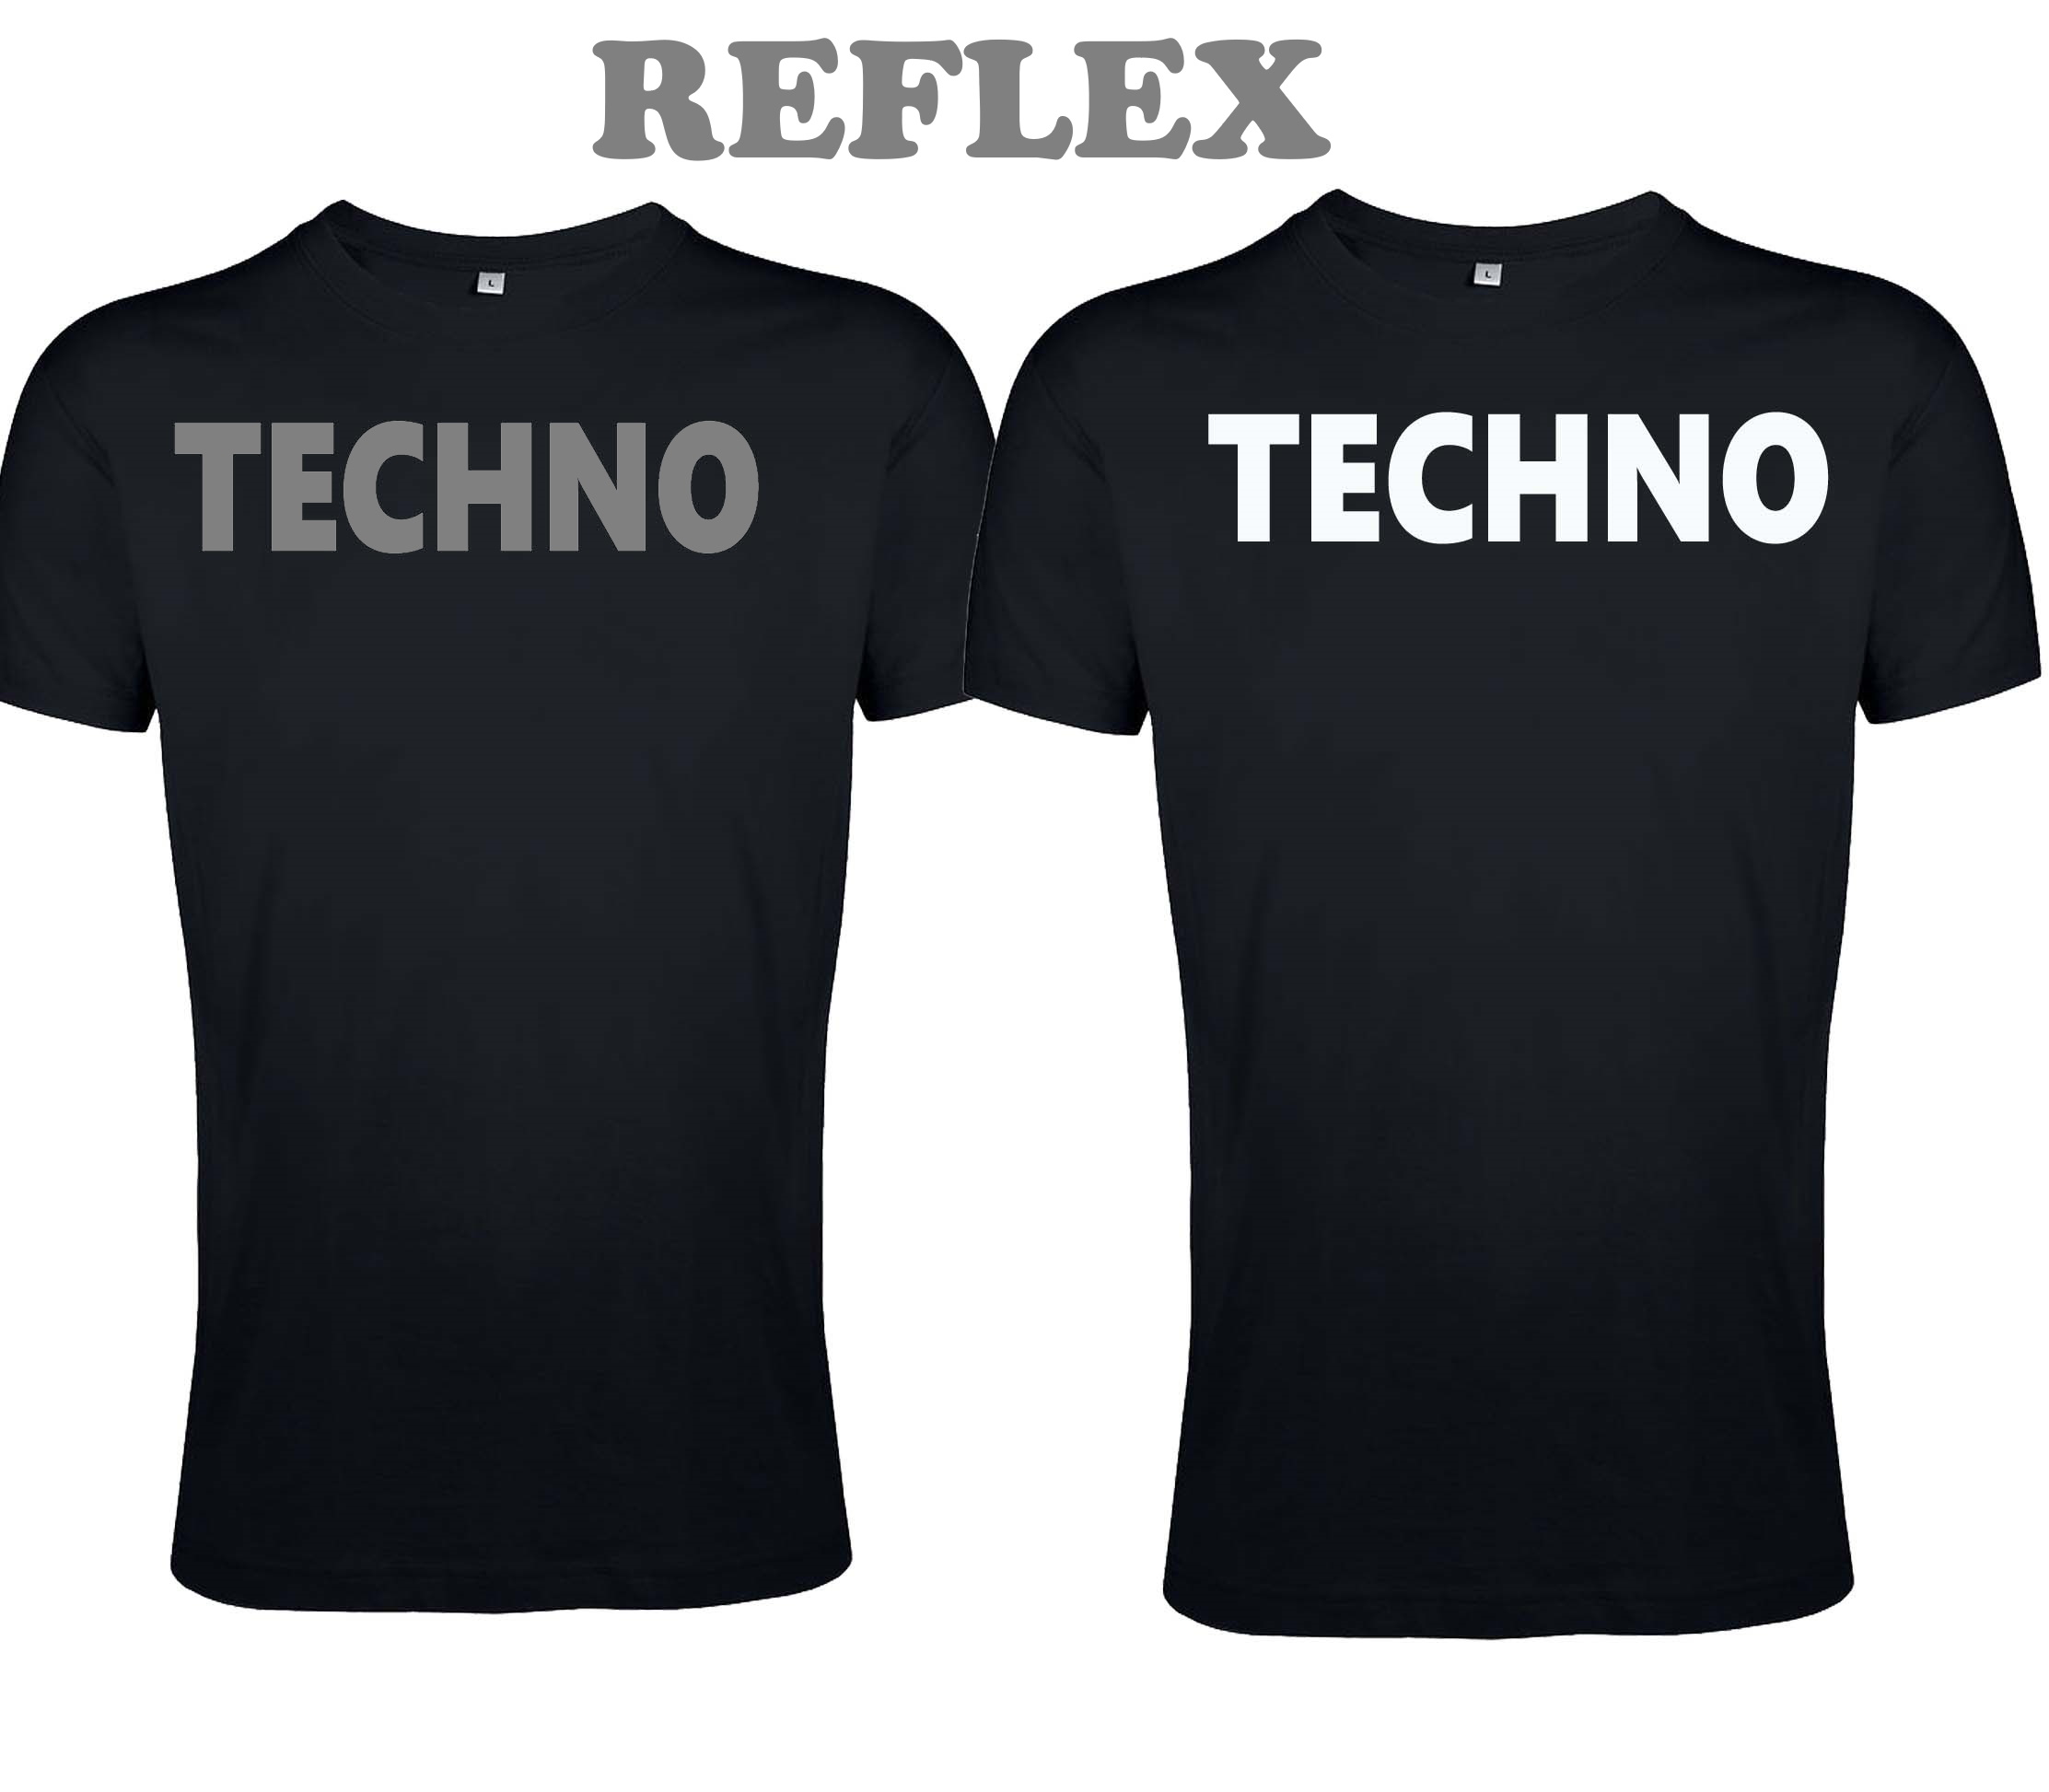 T-Shirt von SONICX Model " TECHNO CLASSIC" in Schwarz-Weiss oder REFLEX